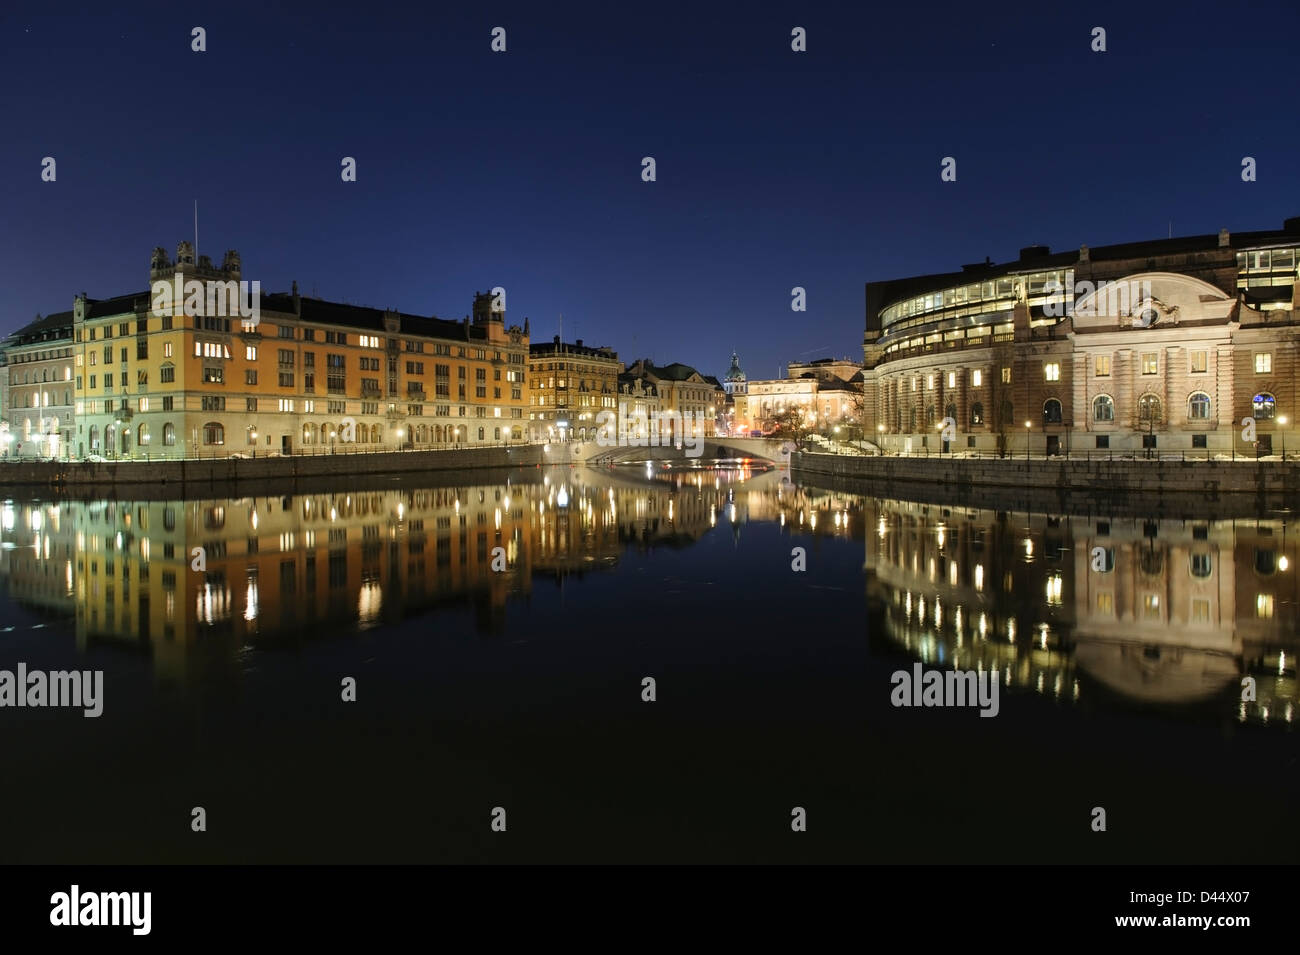 Stoccolma vista notturna con la casa del parlamento, gli edifici governativi, e l'Opera si riflette nel lago Malaren Foto Stock